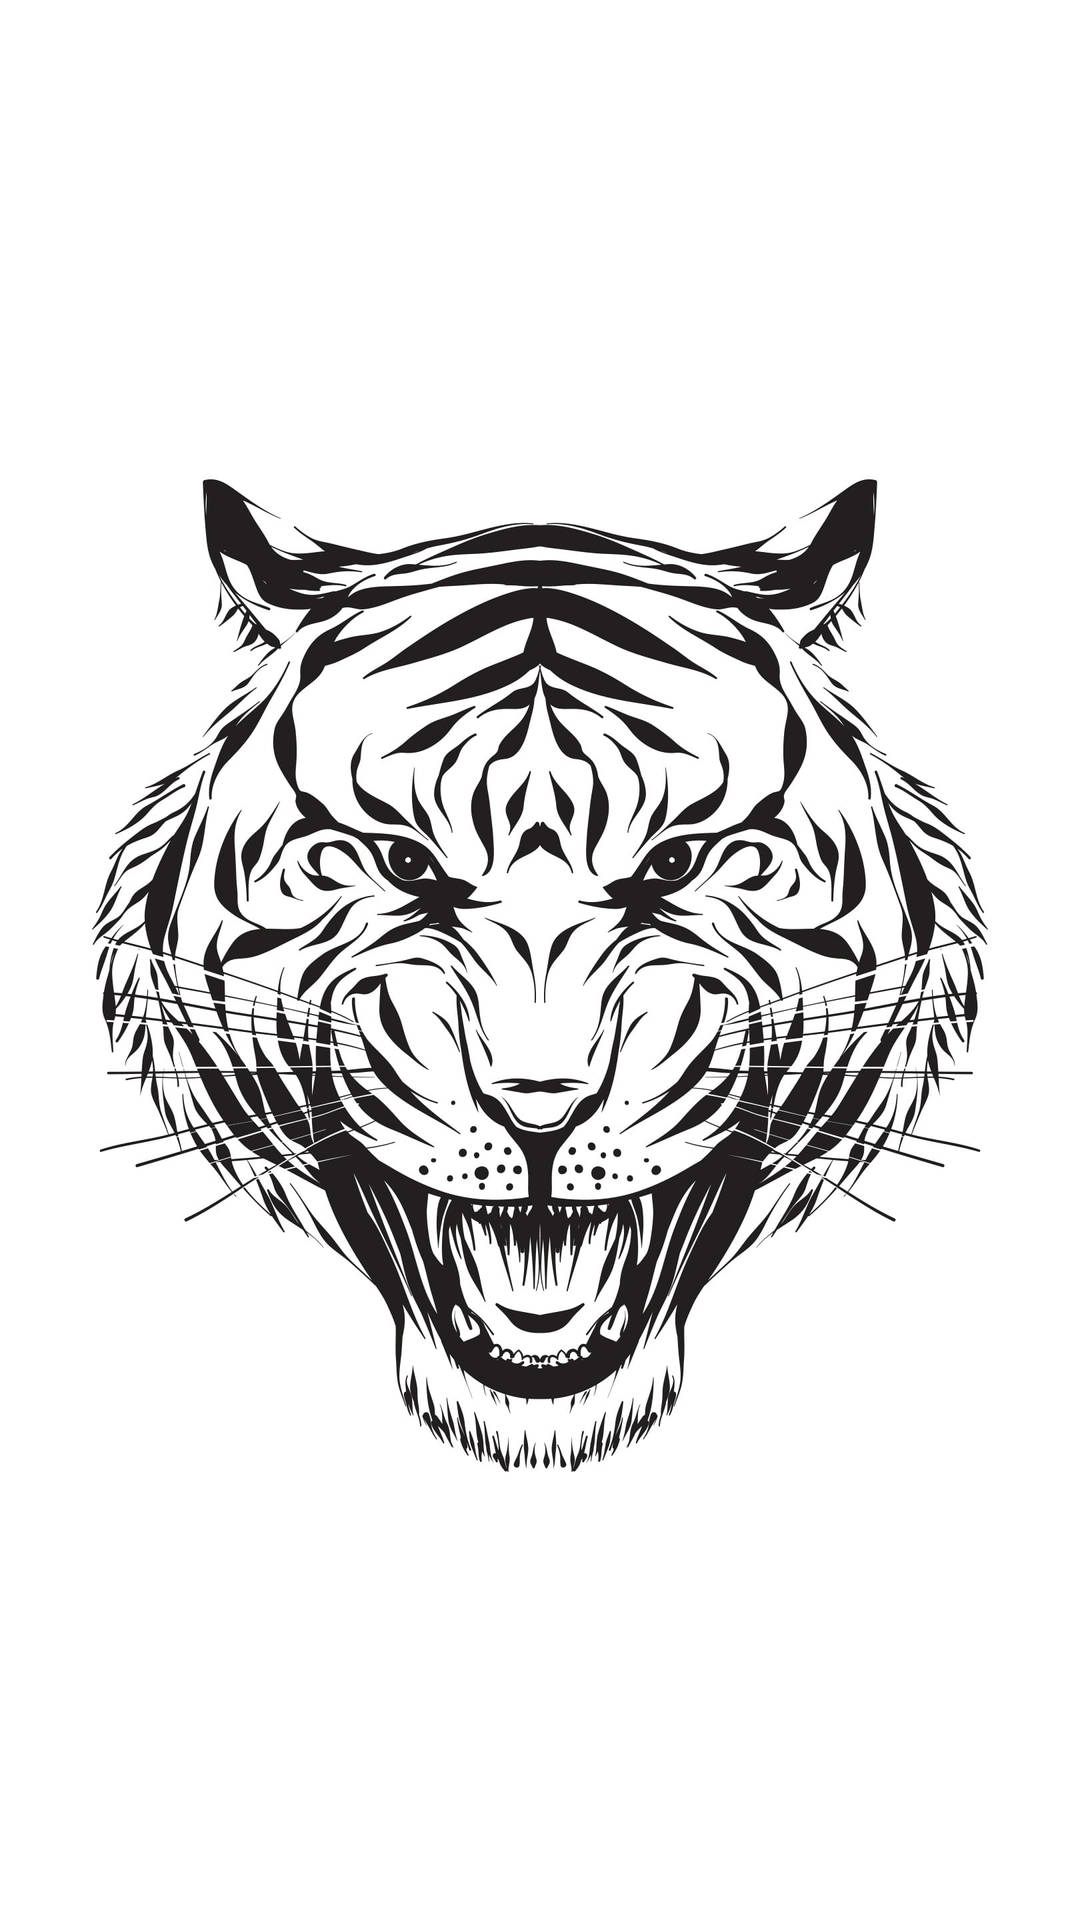 Majestic Tiger Head Hd Tattoo Design